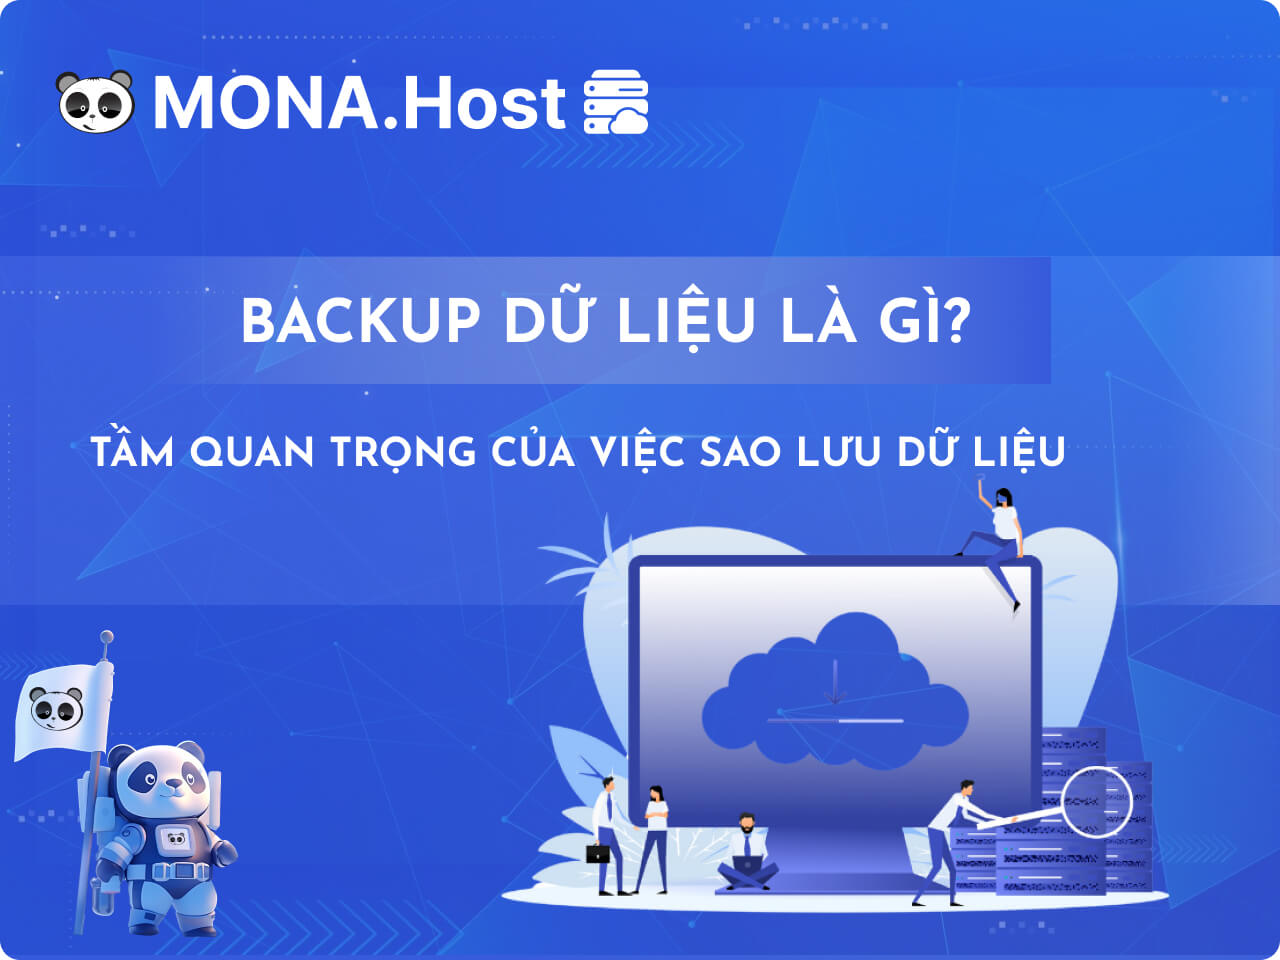 Backup dữ liệu là gì? Tâm quan trọng của web hosting backup